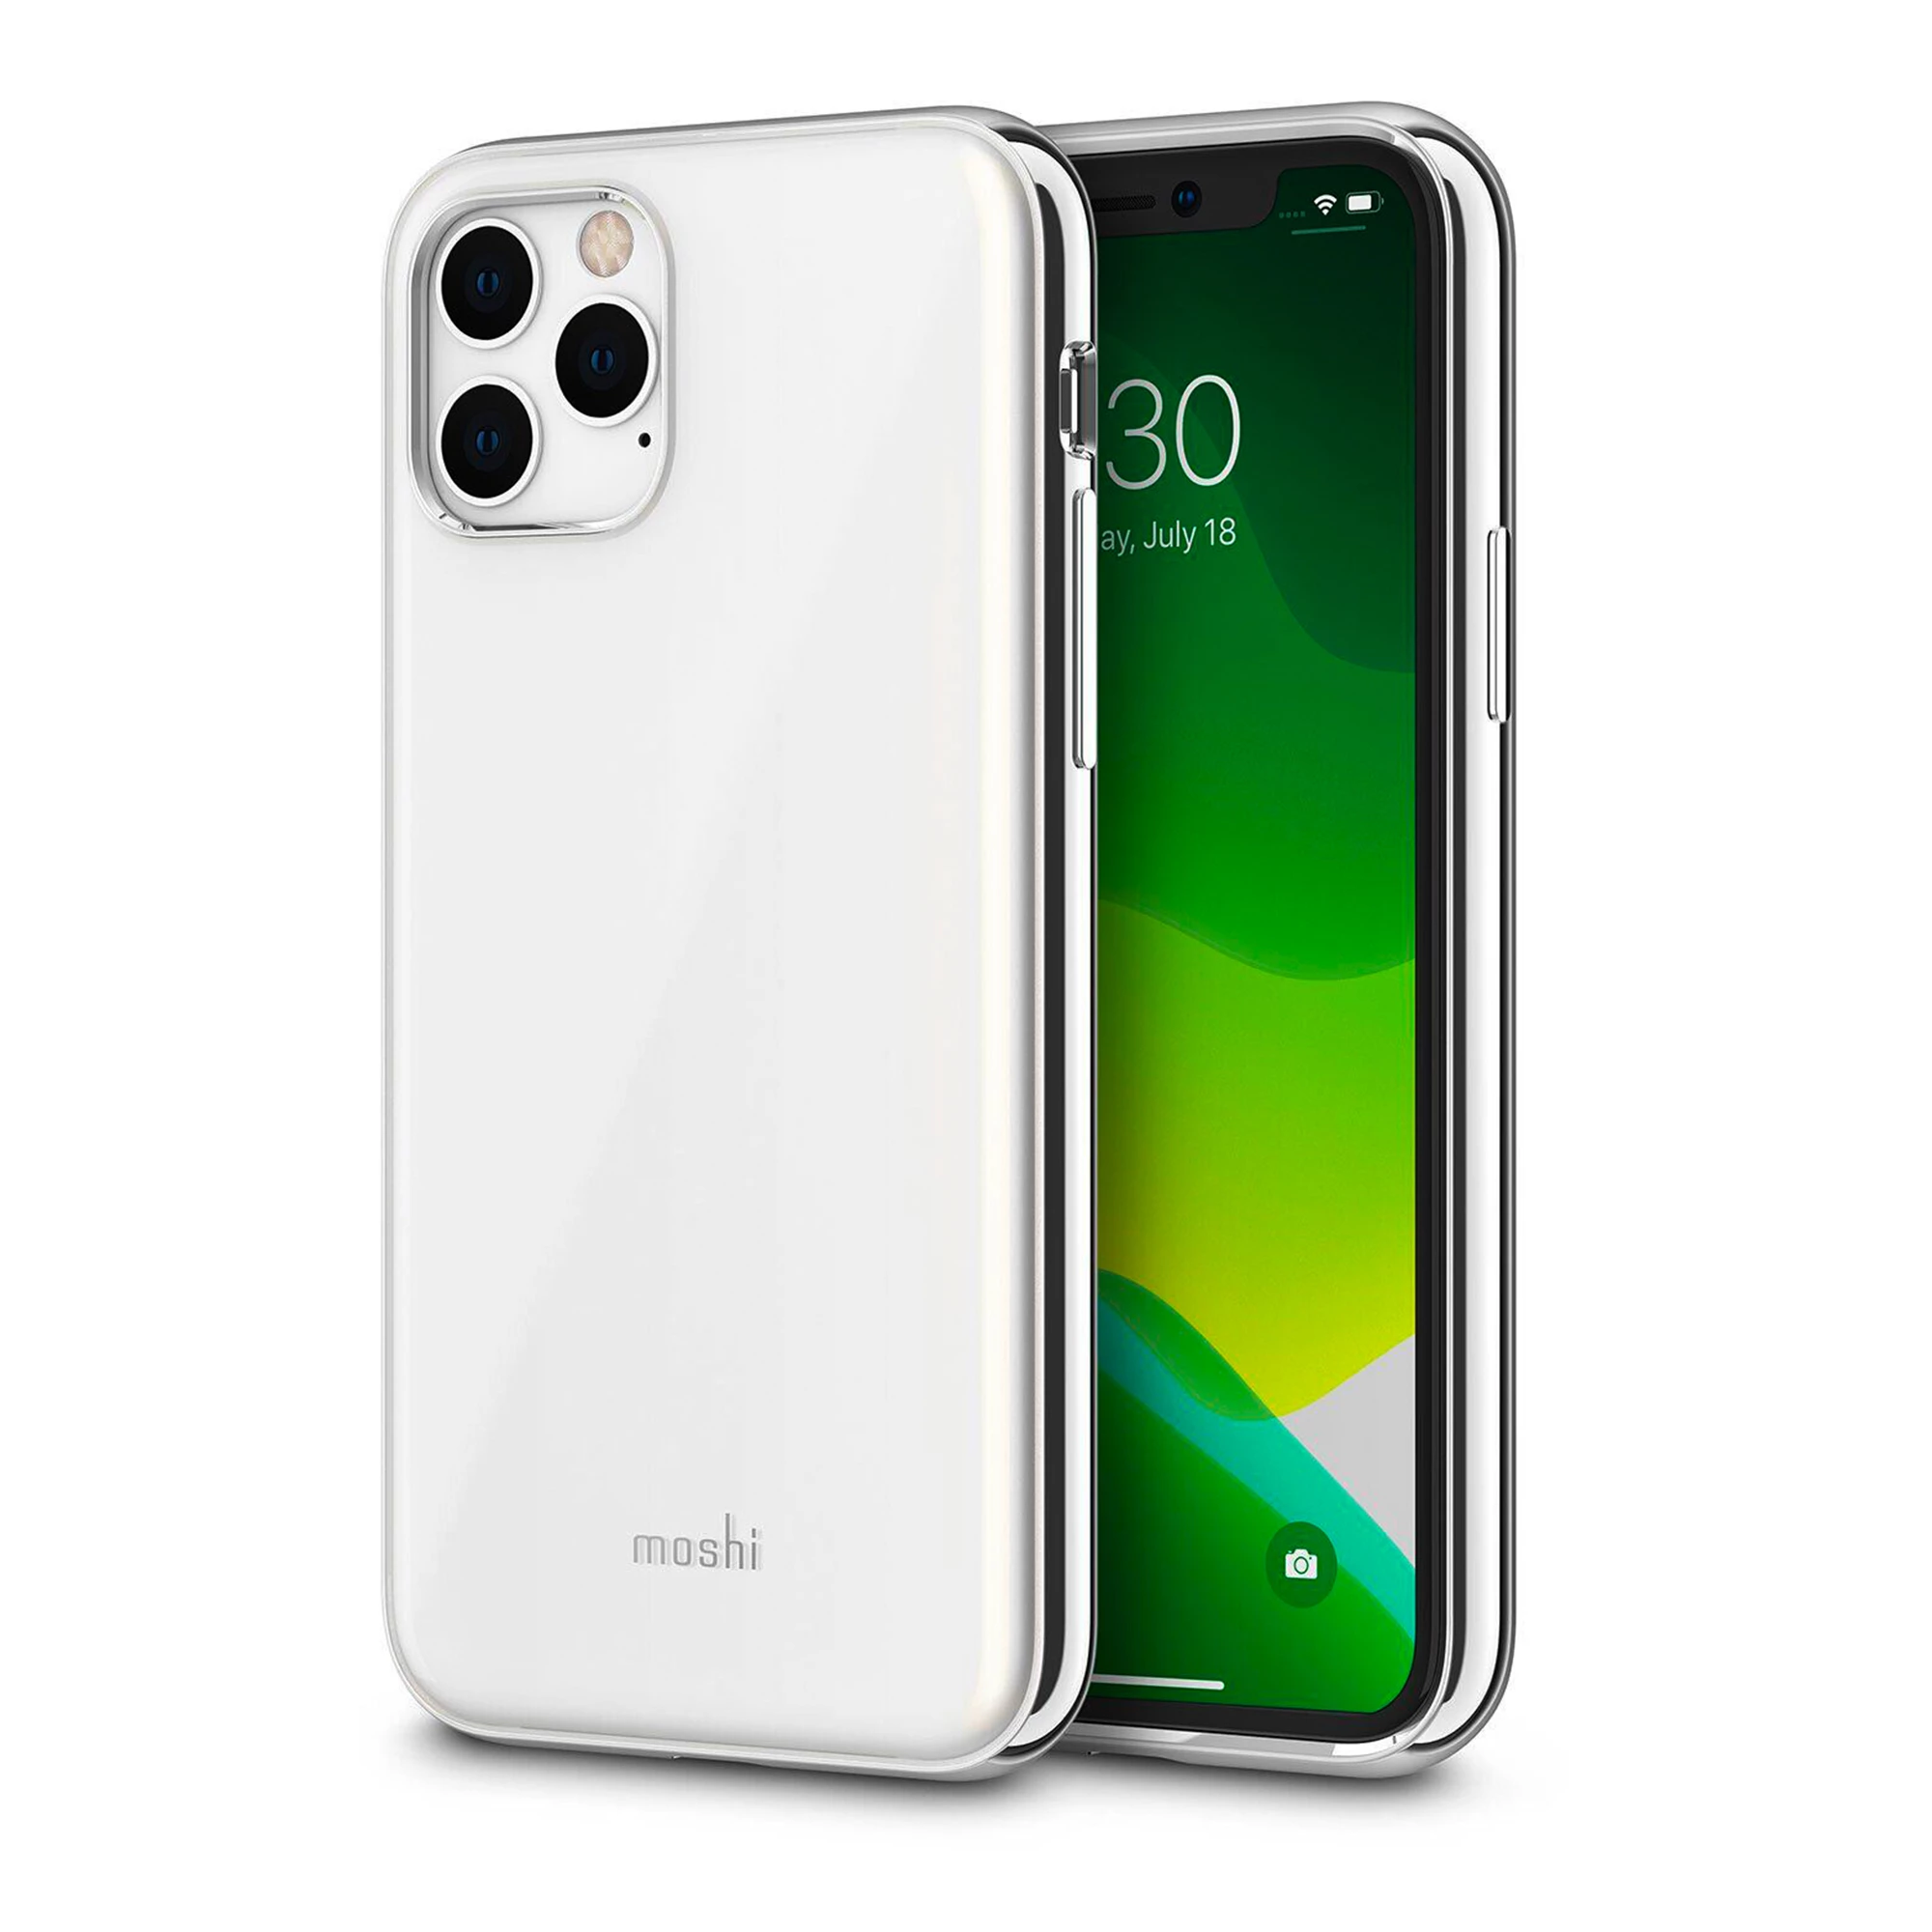 Moshi iGlaze Slim Hardshell Case for iPhone 11 Pro Max Pearl White (99MO113105)